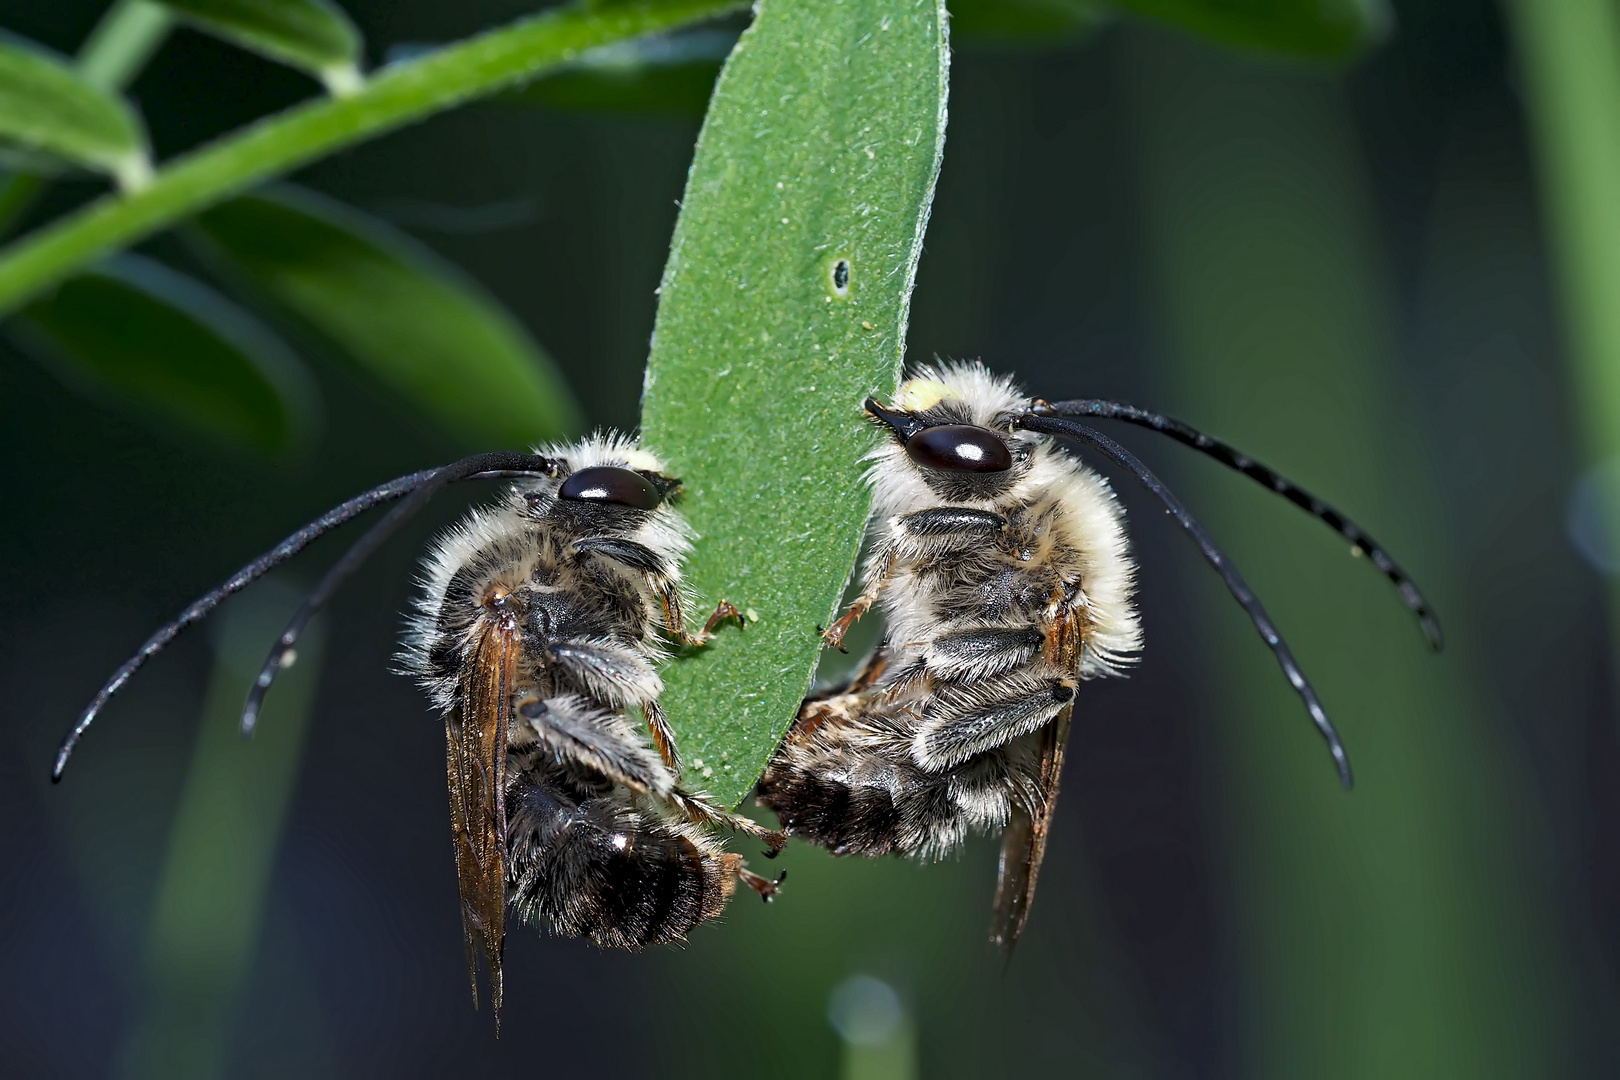 2. Foto: Zwei Langhornbienen* im Tiefschlaf. - Deux abeilles sauvages pendant leur profond sommeil!